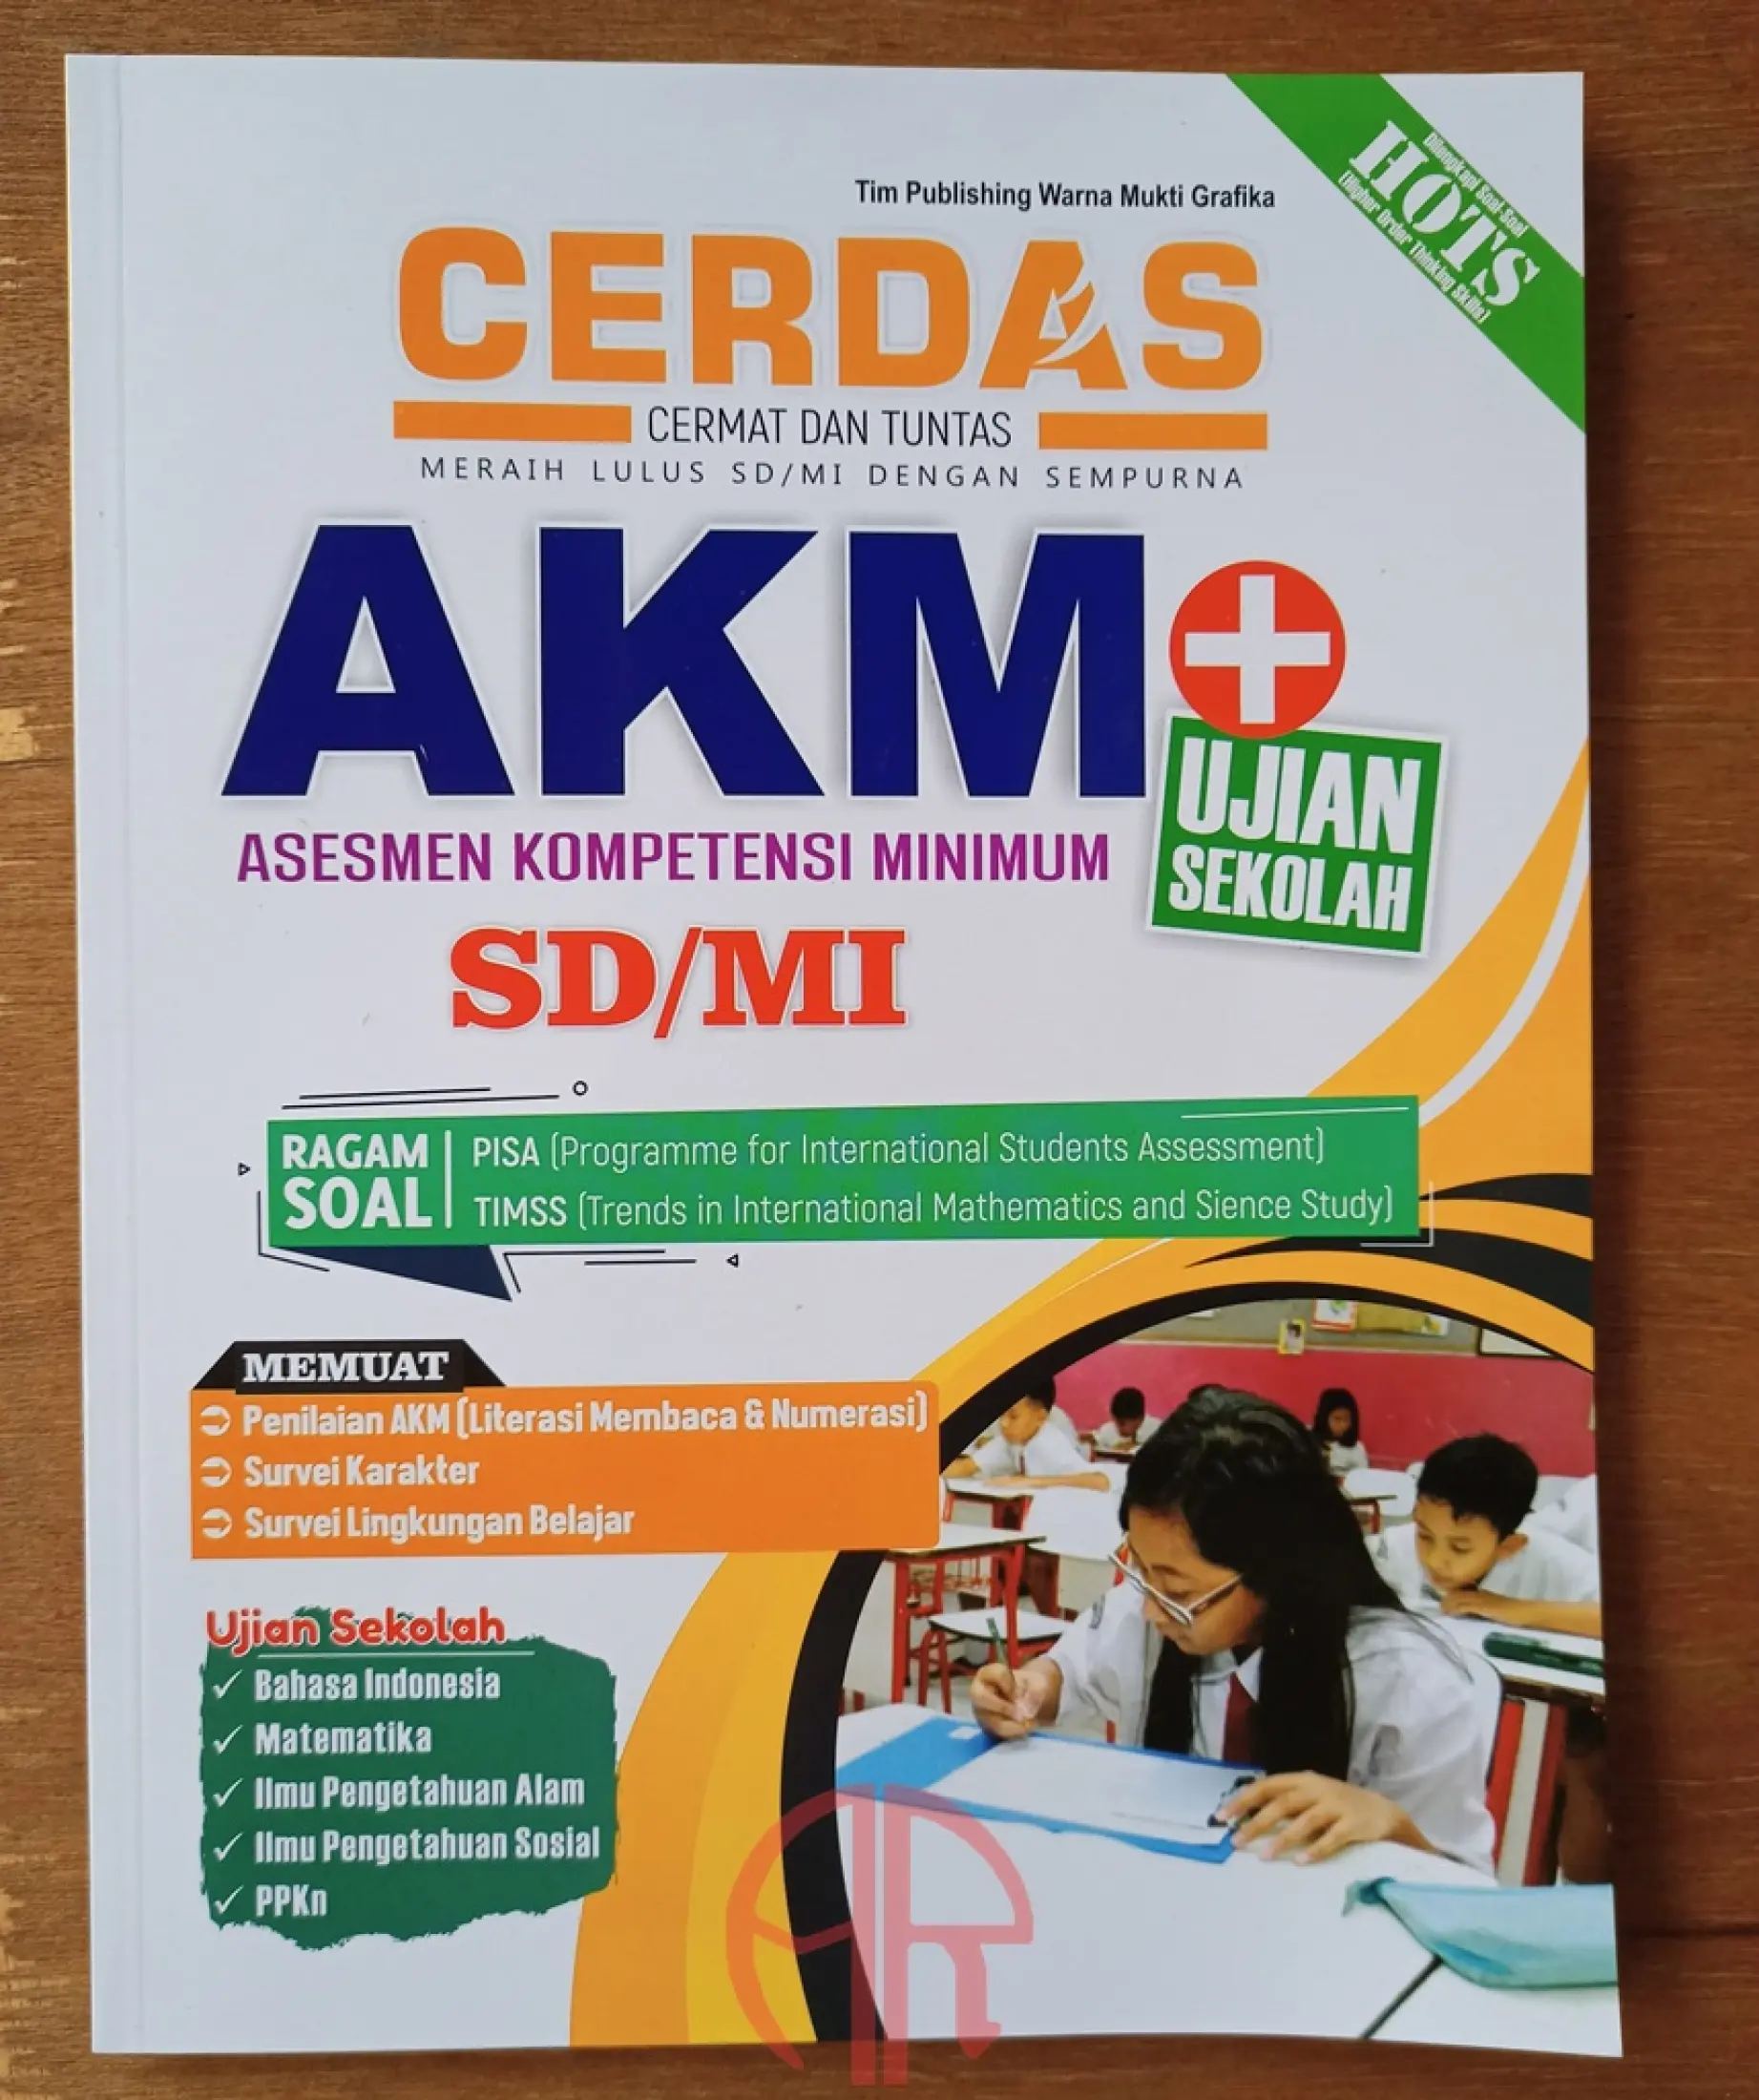 Buku Cerdas Akm Ujian Sekolah Sd Mi Kelas 6 Revisi K13n Lazada Indonesia